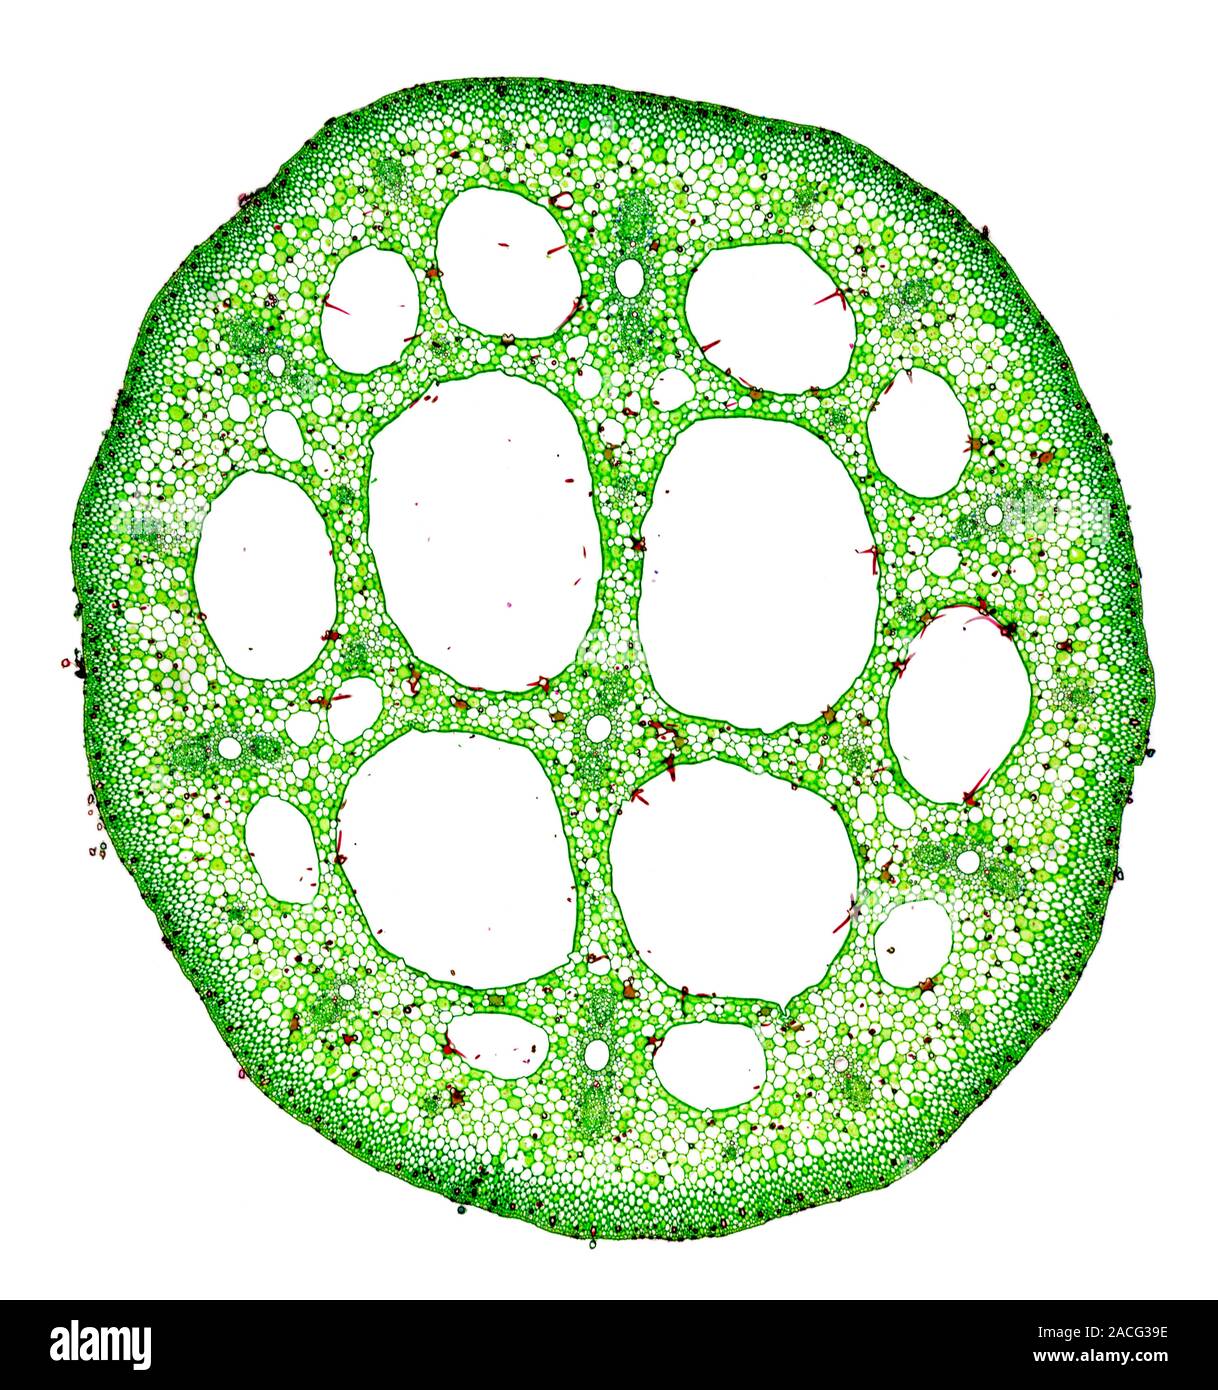 Hoja de lirio de agua del tallo. Luz micrografía de una sección transversal  a través de la hoja de tallo (peciolo) de un nenúfar (Nymphaea sp.). Todas  las plantas acuáticas (h Fotografía